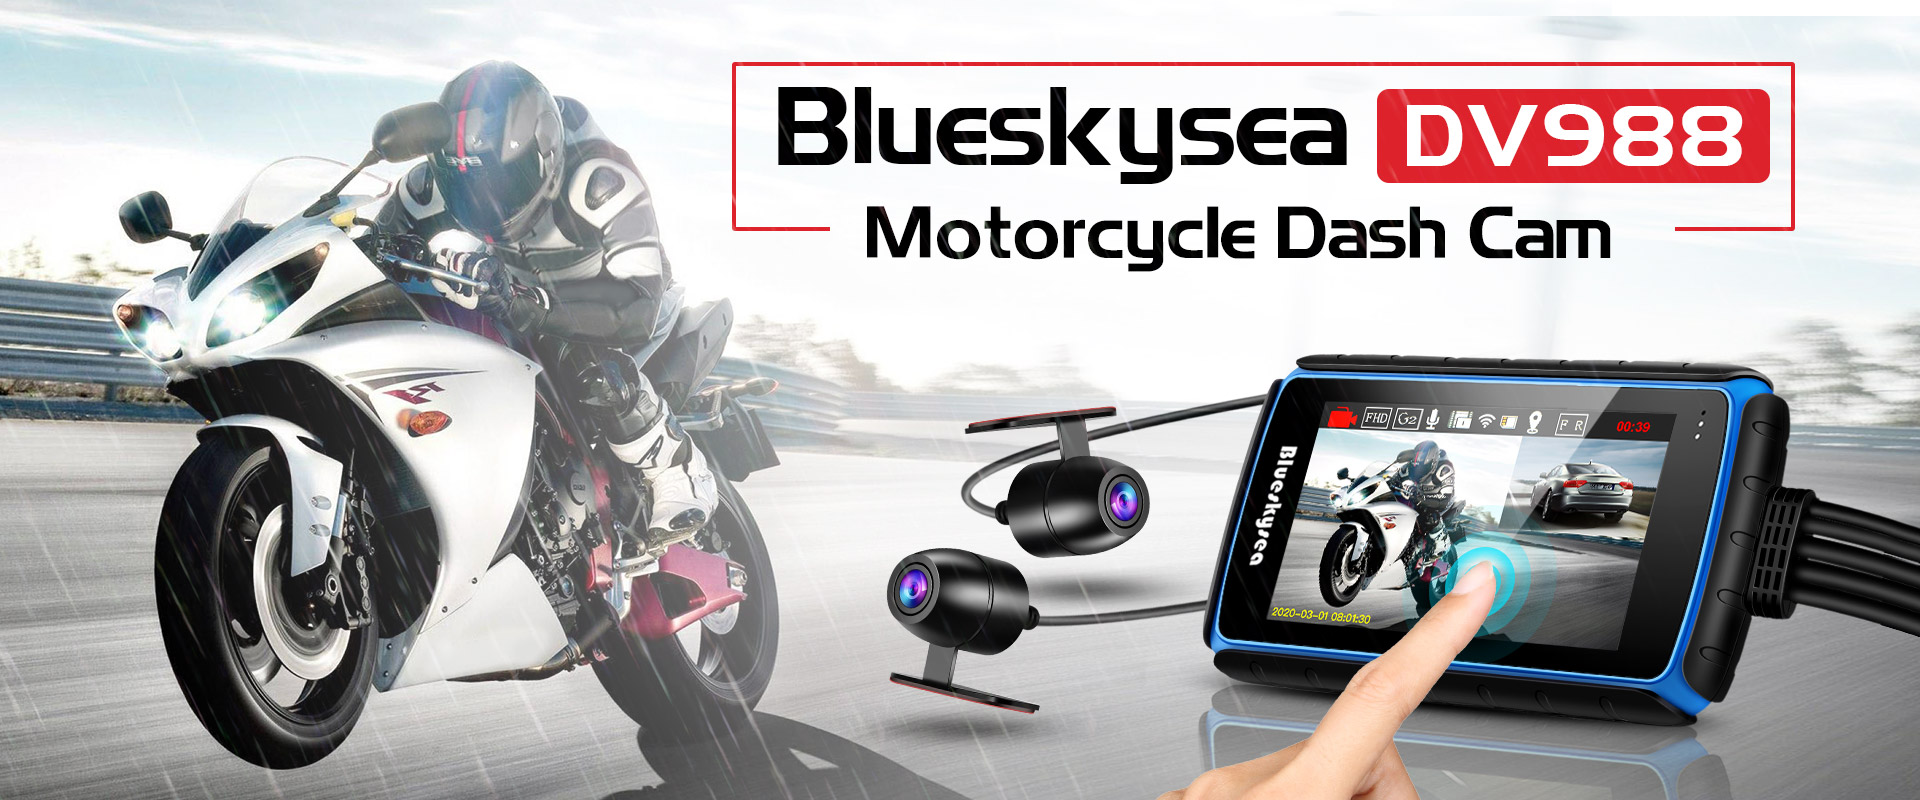 blueskysea dv128 motorcycle dash cam 1080p